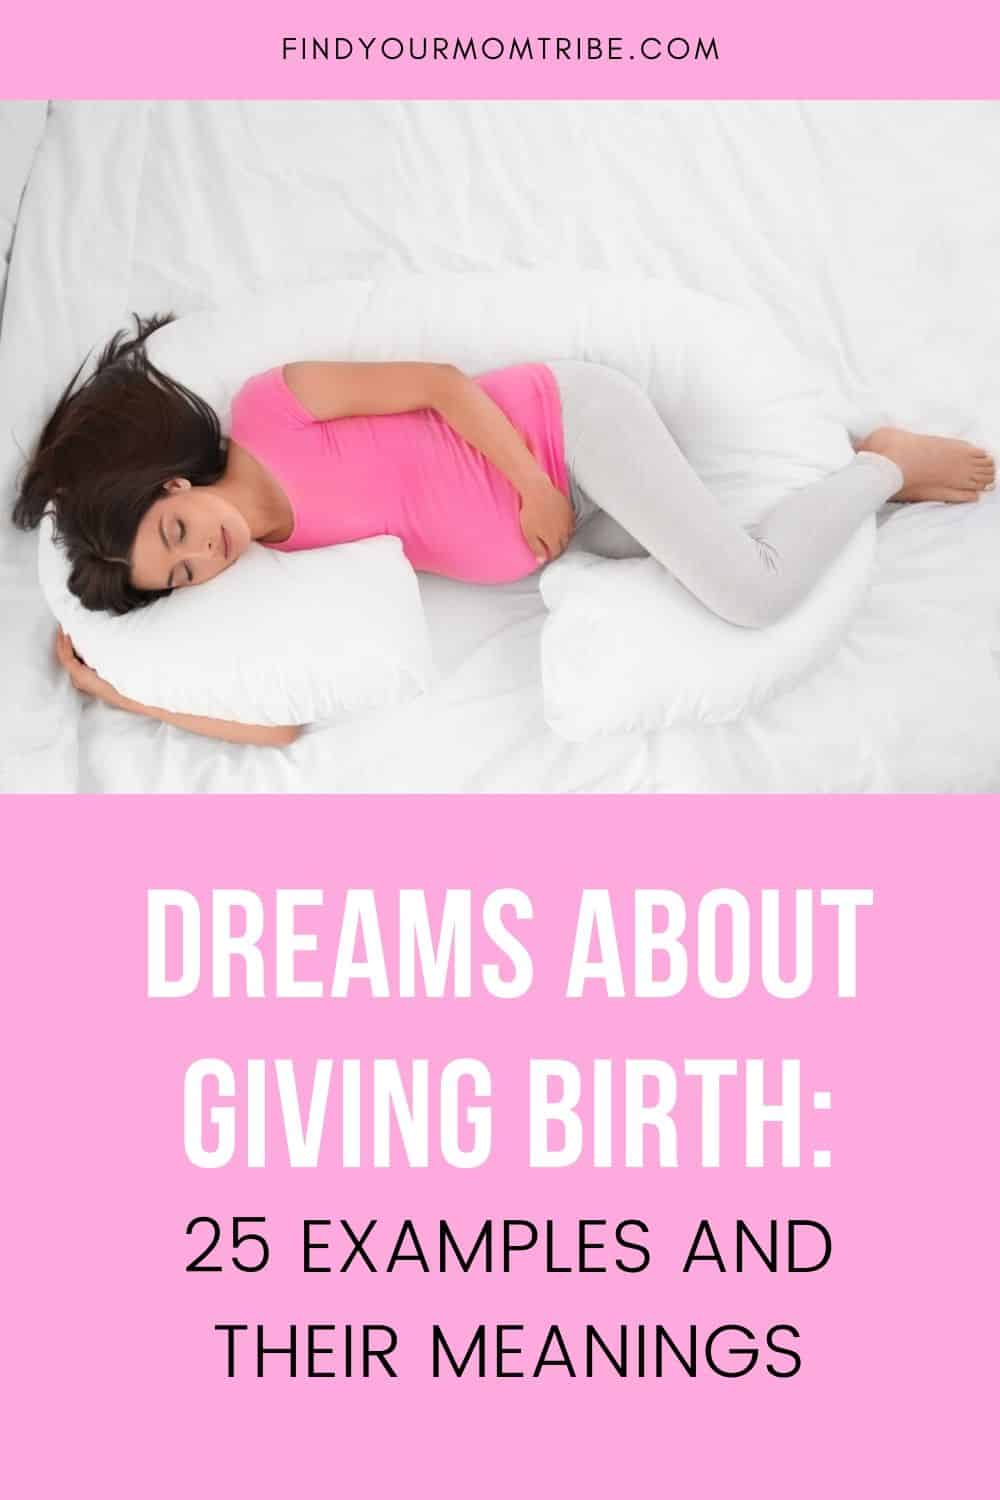 Soñar con dar a luz - Significado e interpretación